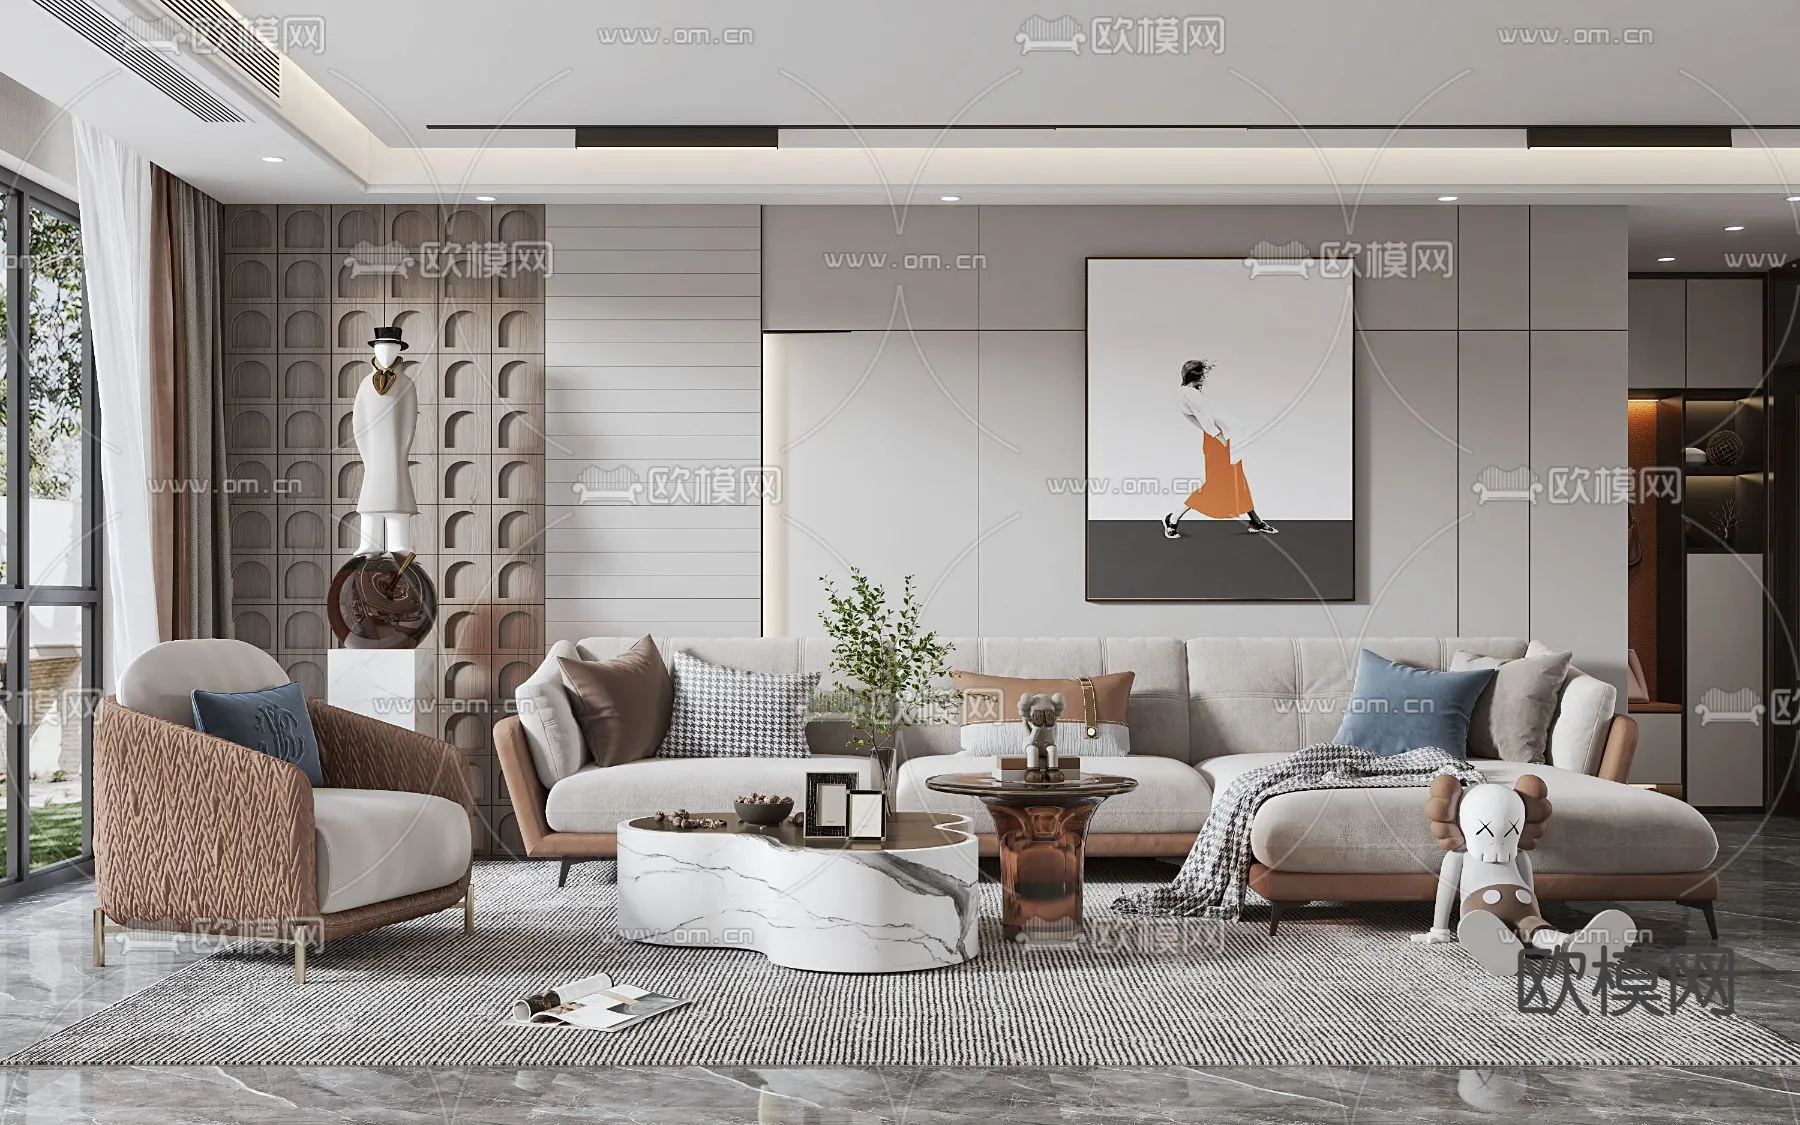 Living Room 3D Scenes – 0924